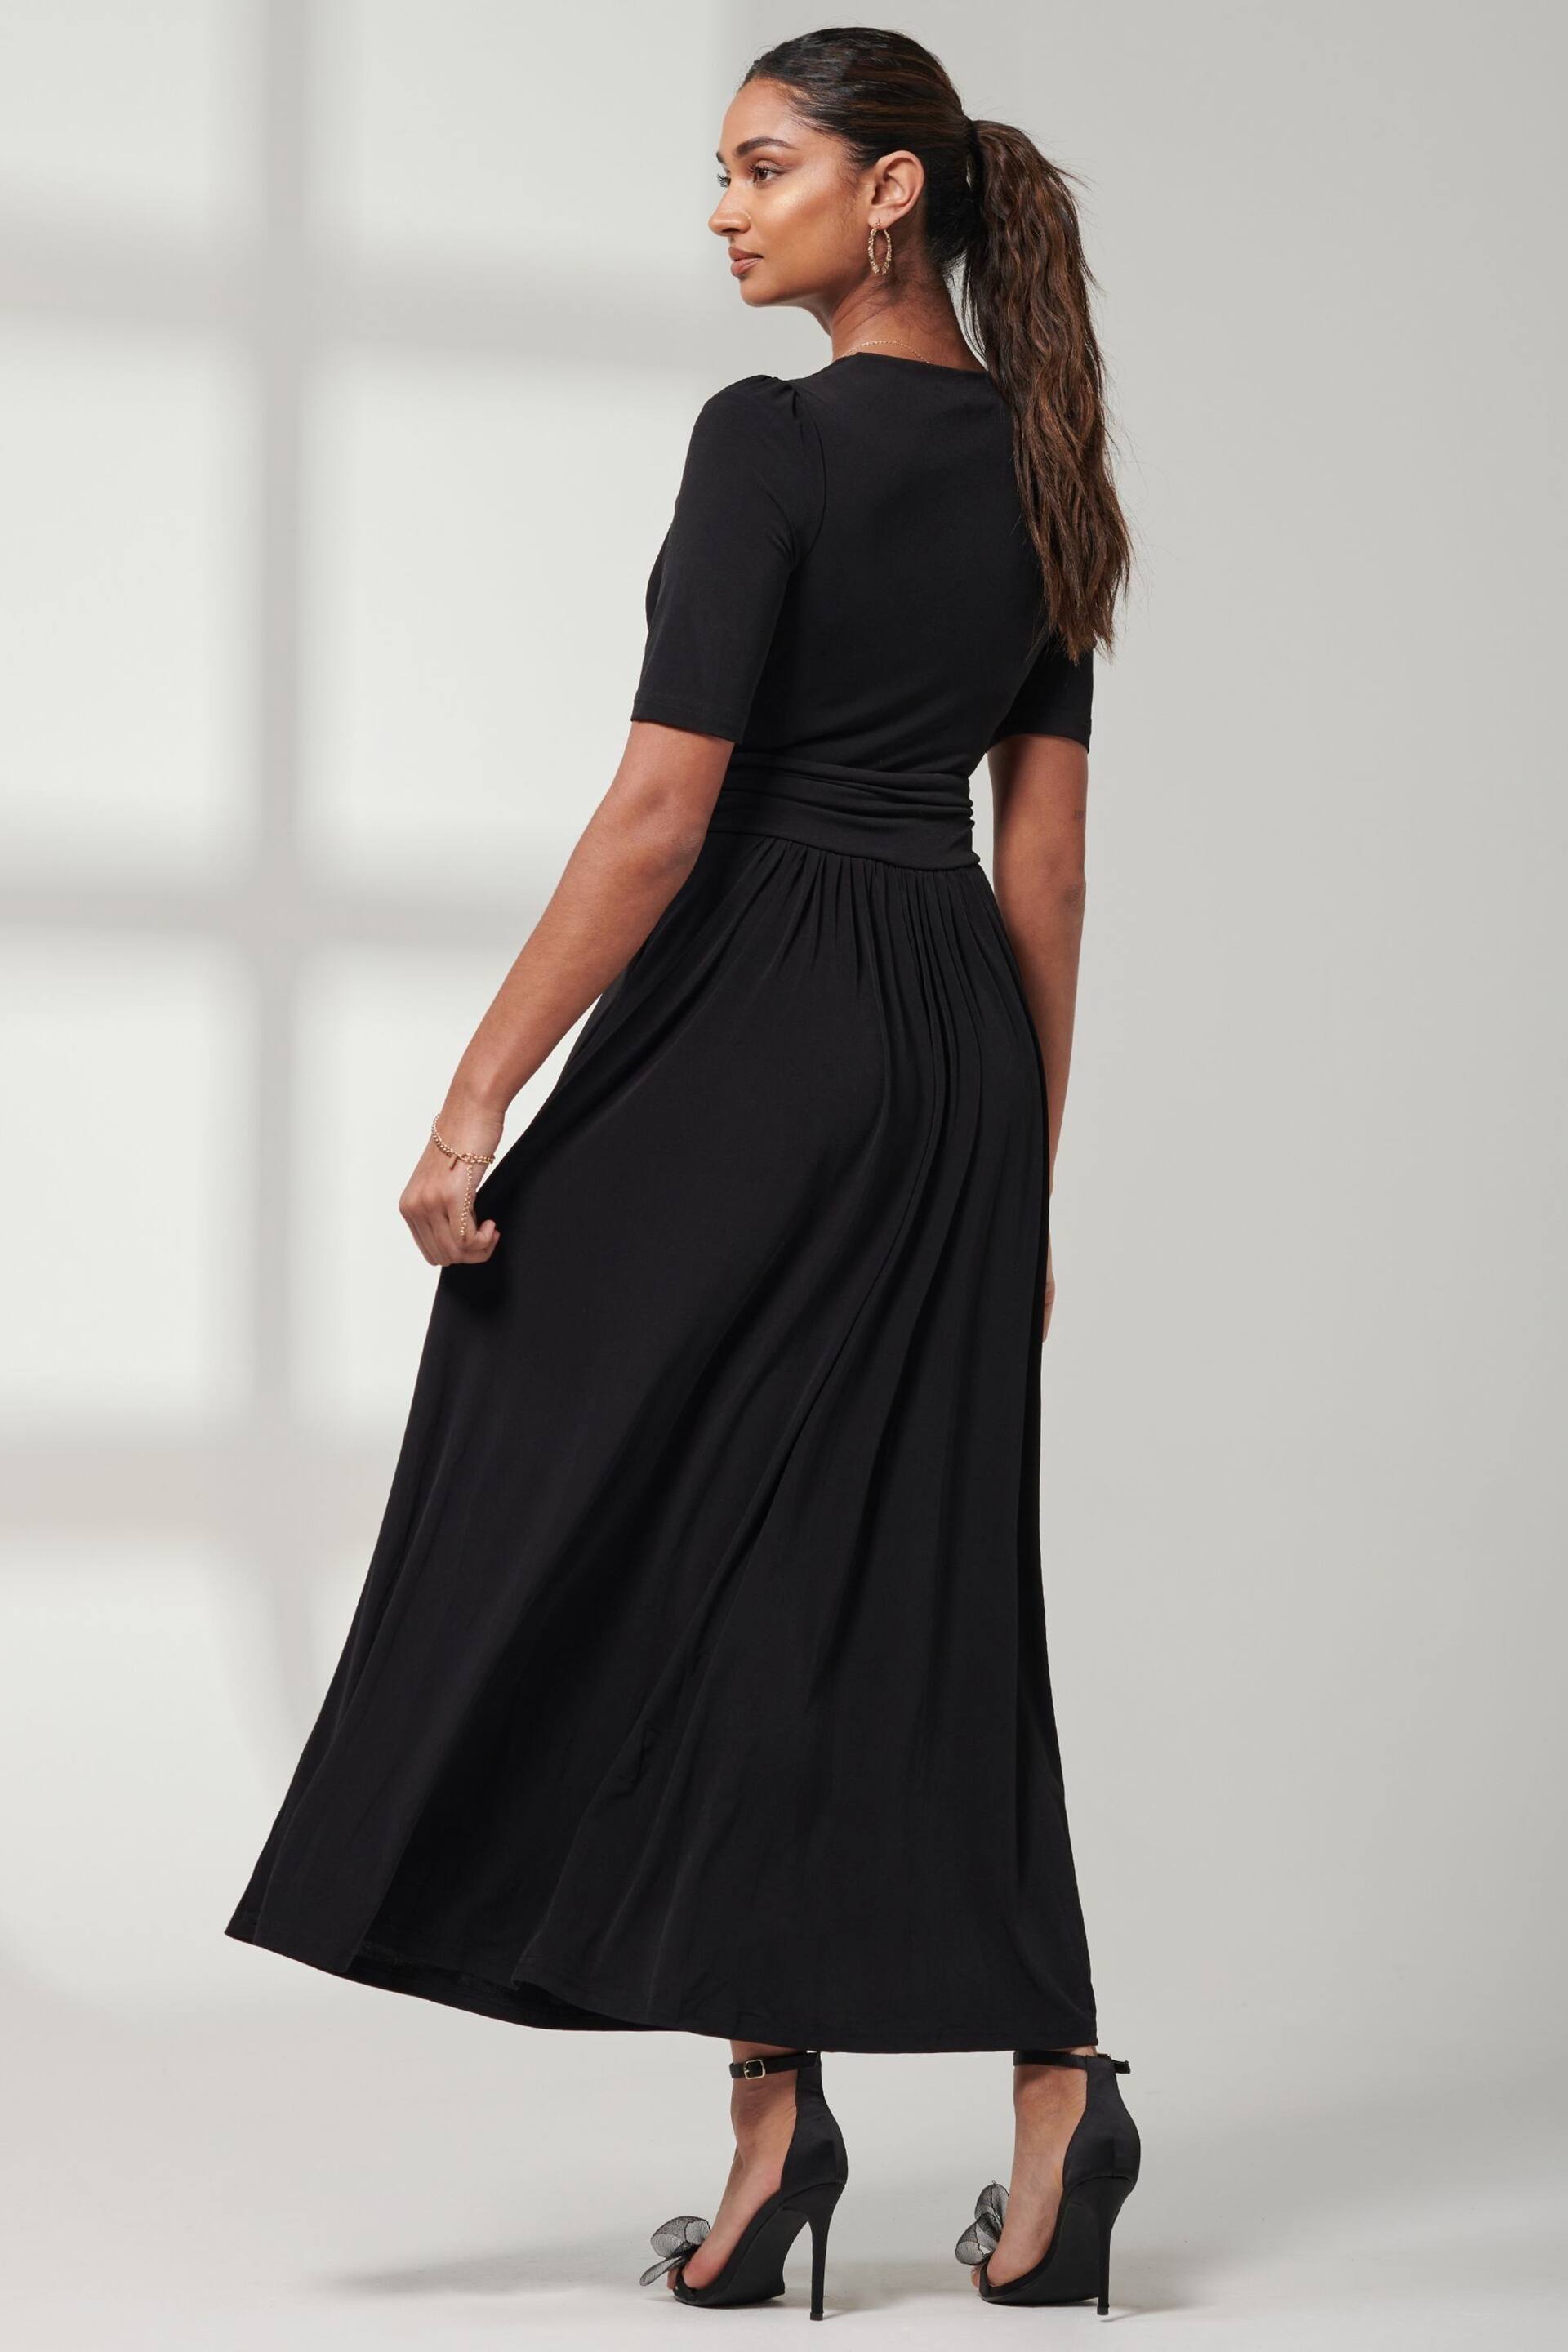 Jolie Moi Black Plain Jersey Wrap Front Maxi Dress - Image 2 of 6